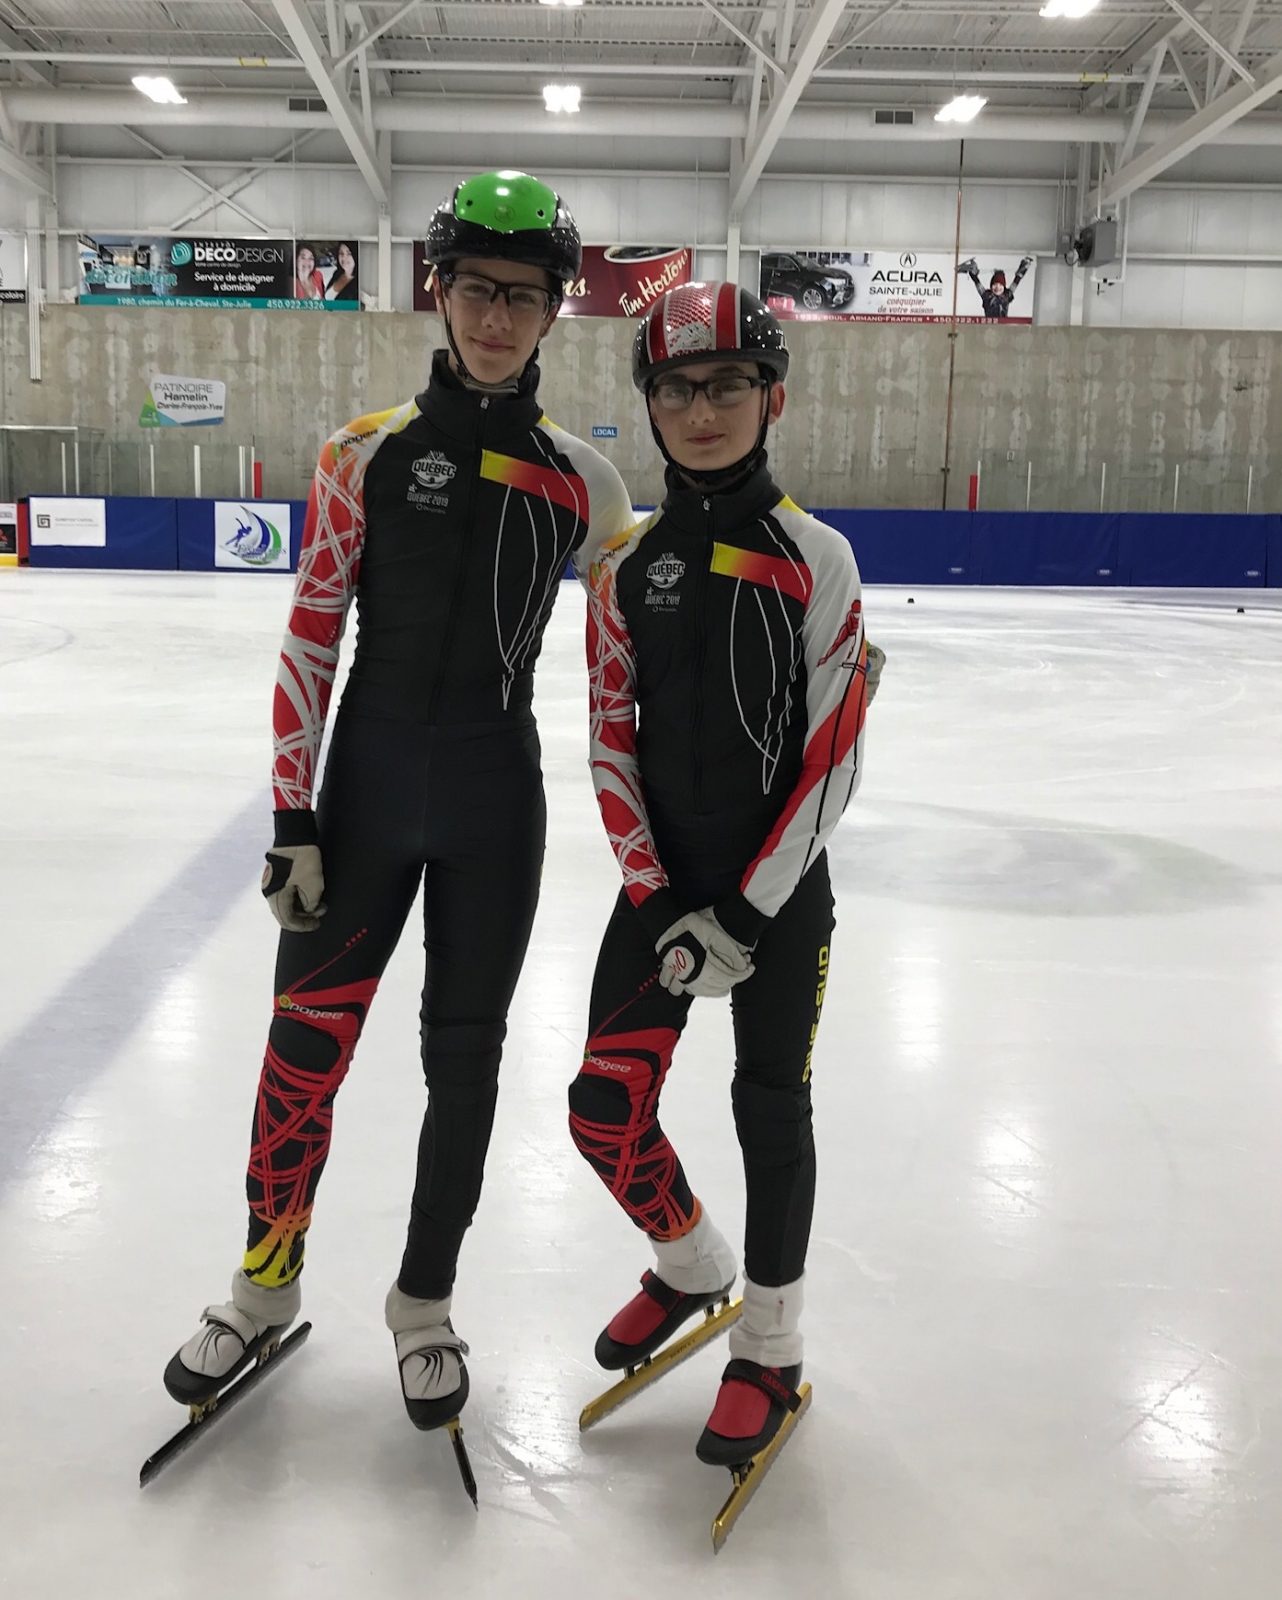 Deux patineurs des Fines lames aux Jeux du Québec